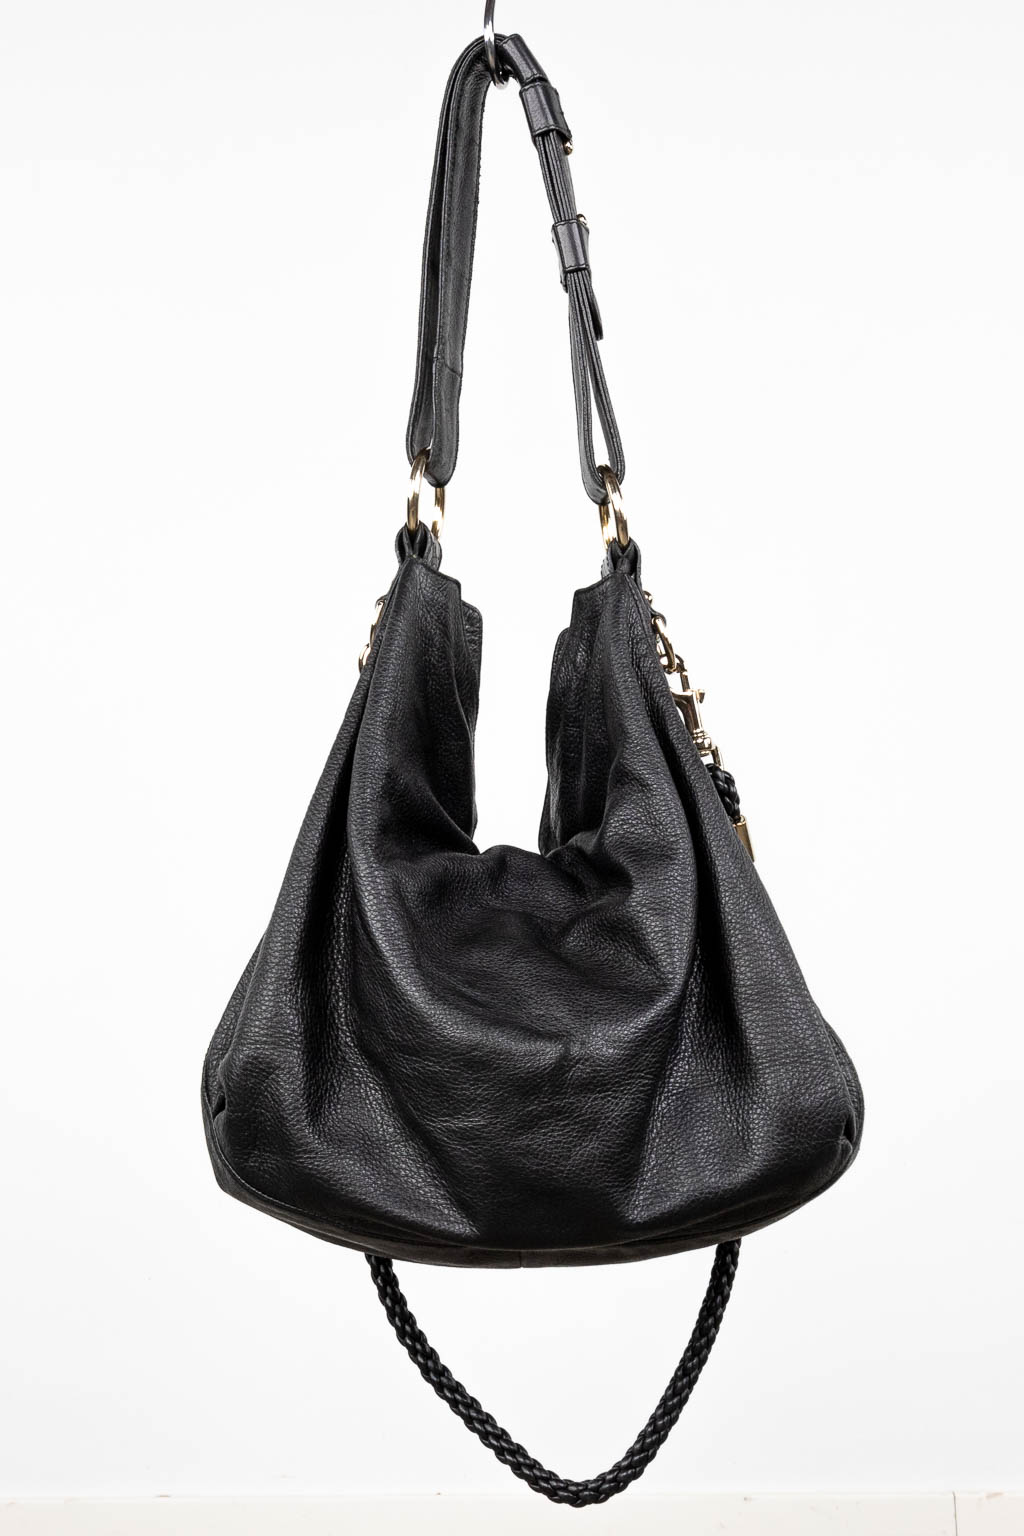 Gucci, een handtas gemaakt uit zwart leder, met originele draagriem. (W:40 x H:35 cm)